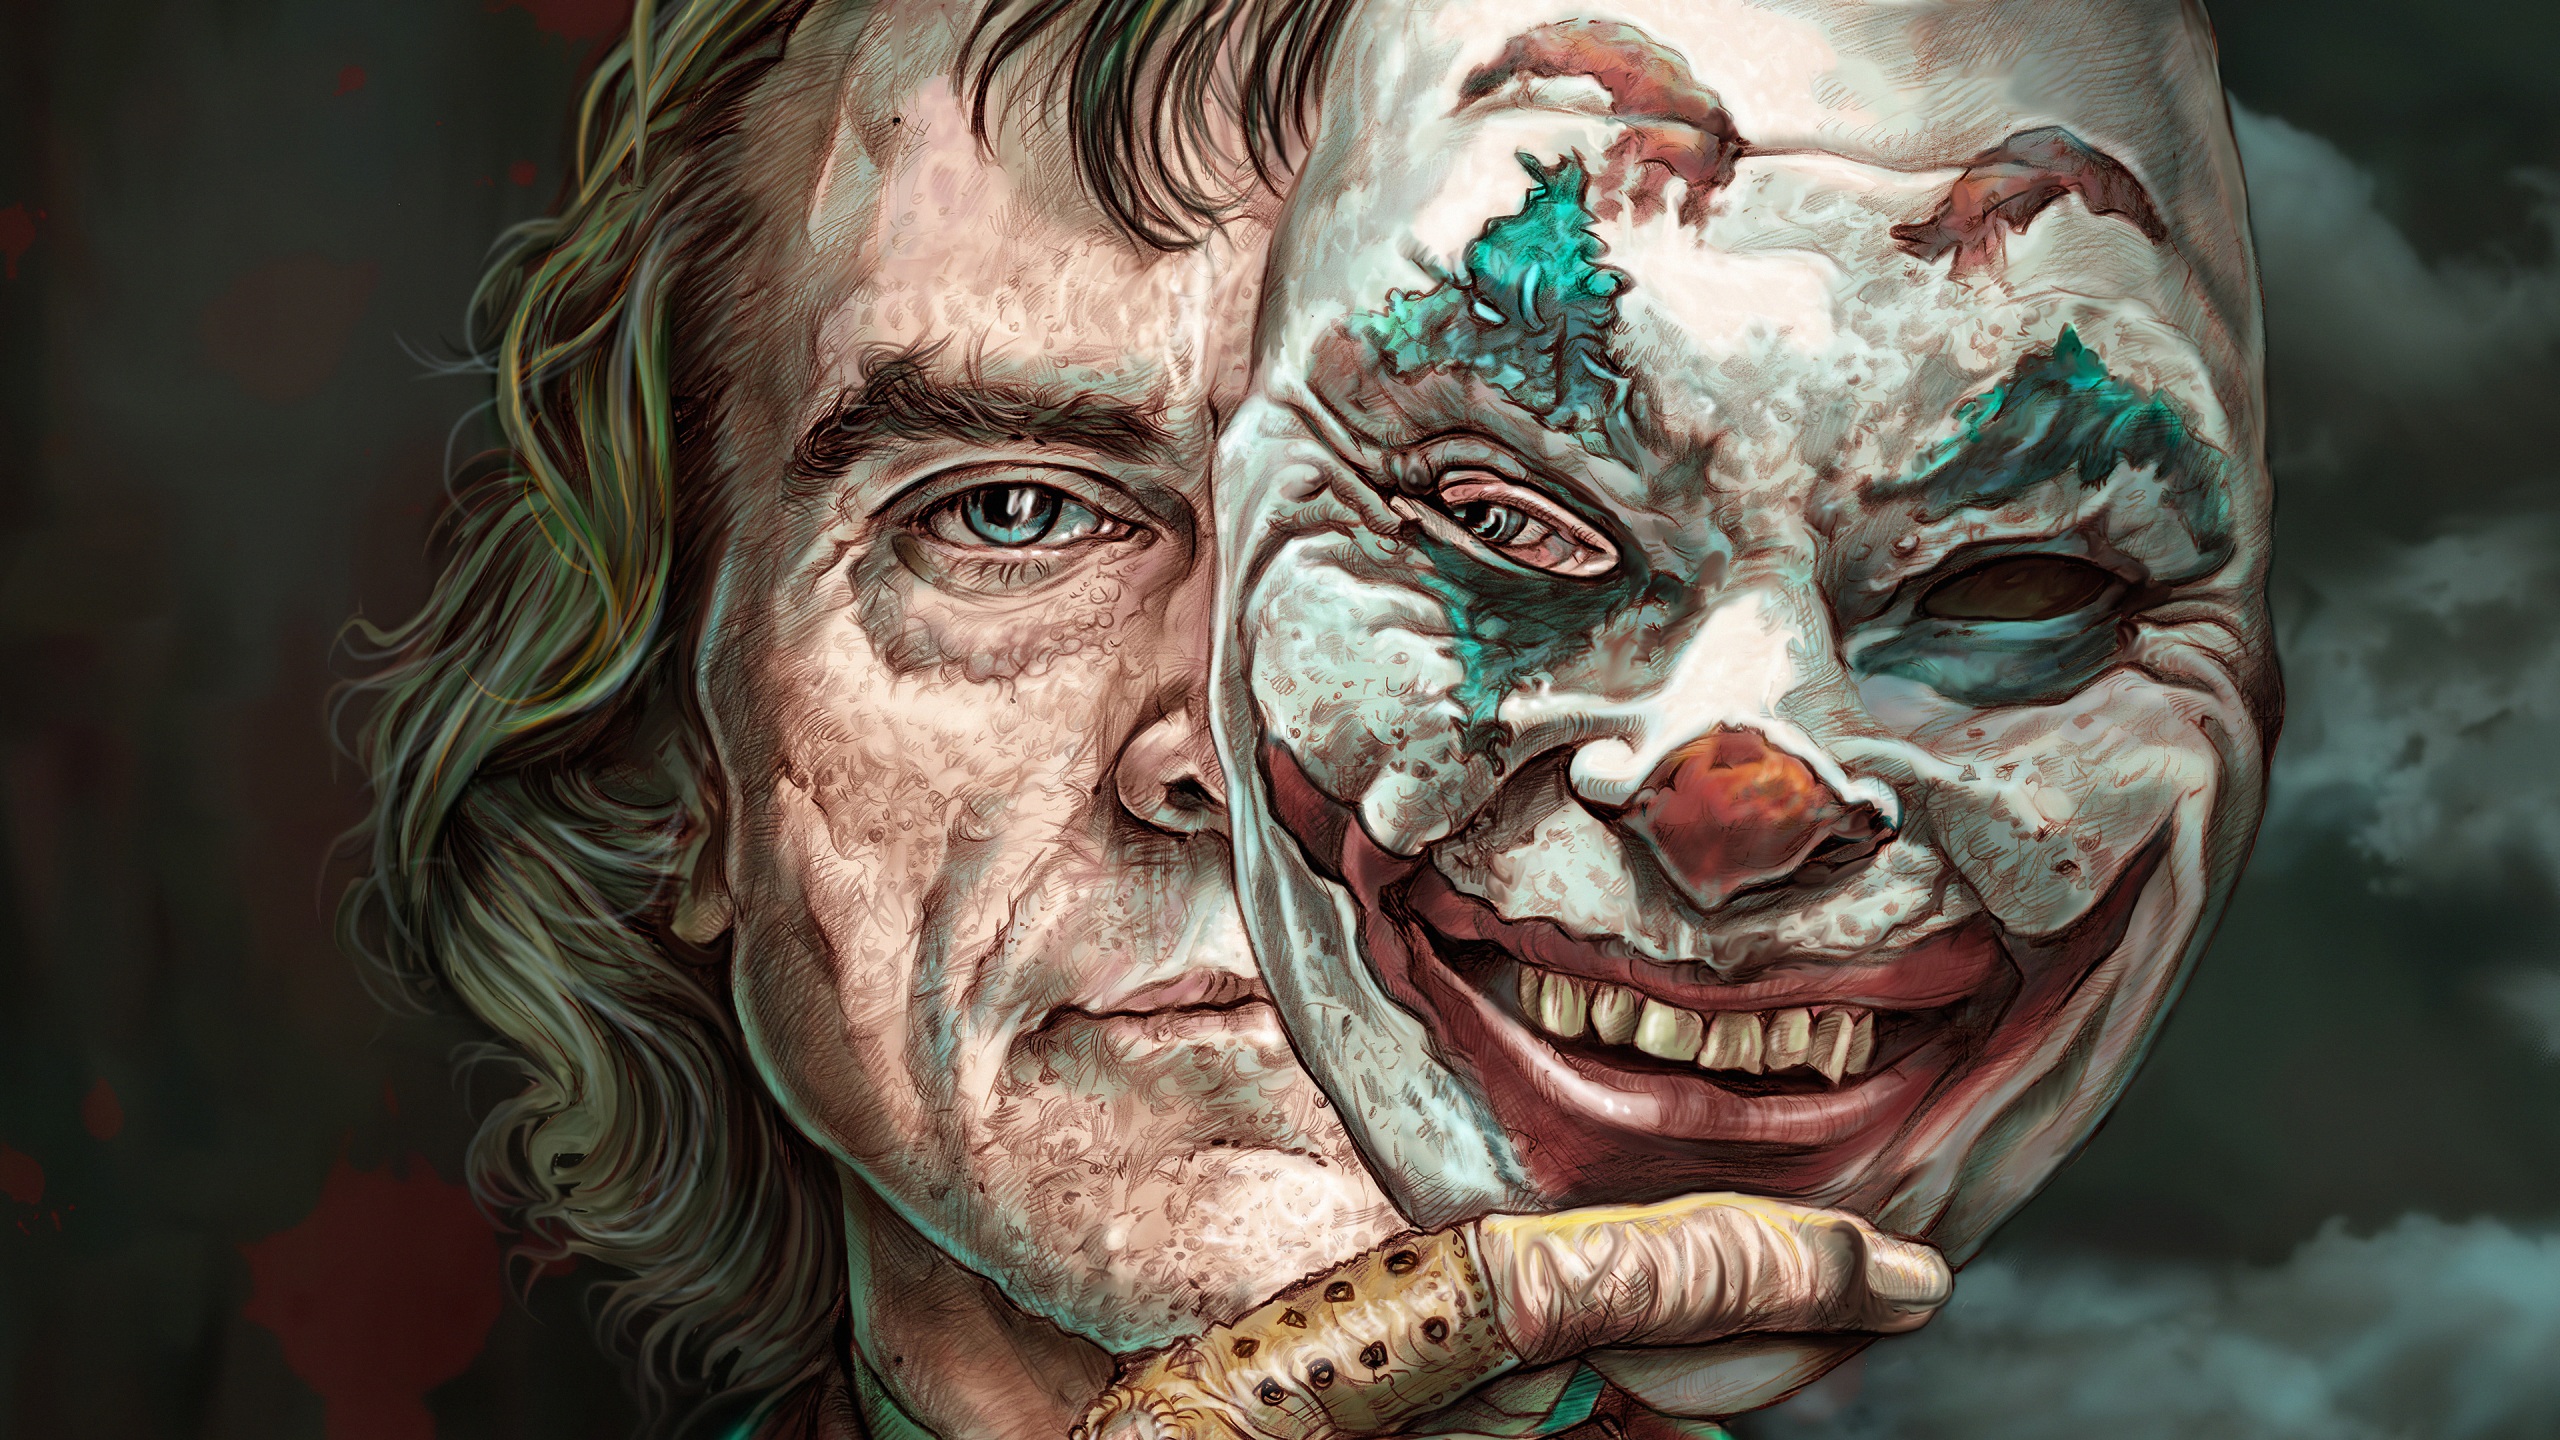 Wallpaper 4k Joker The Mask